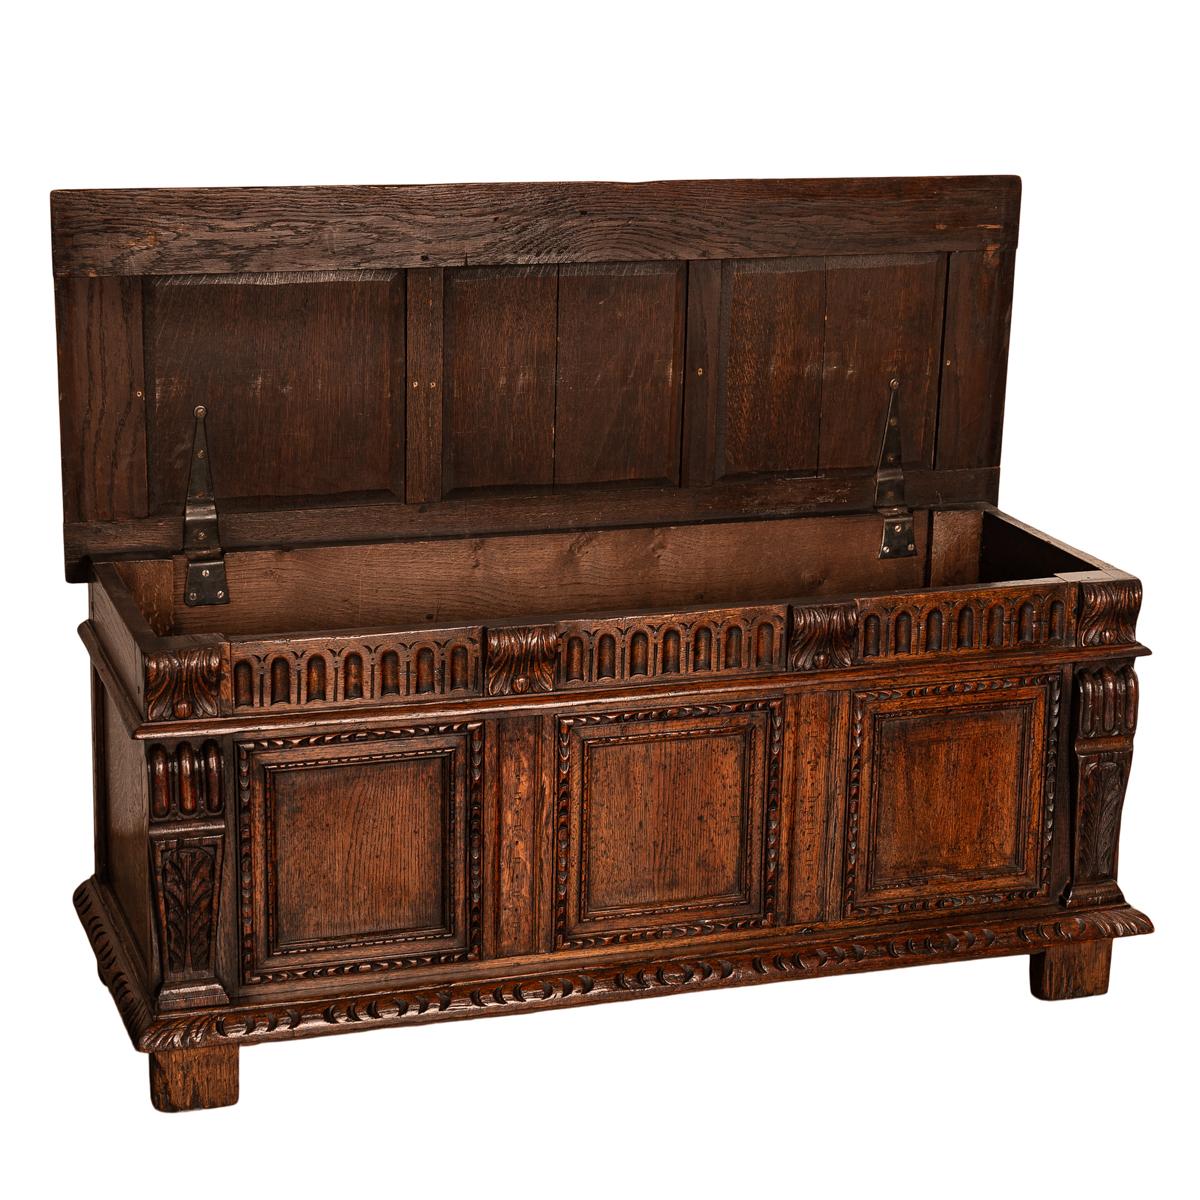 Antique Renaissance Revival Carved Oak Coffer Chest Trunk Window Bench Seat 1880 1